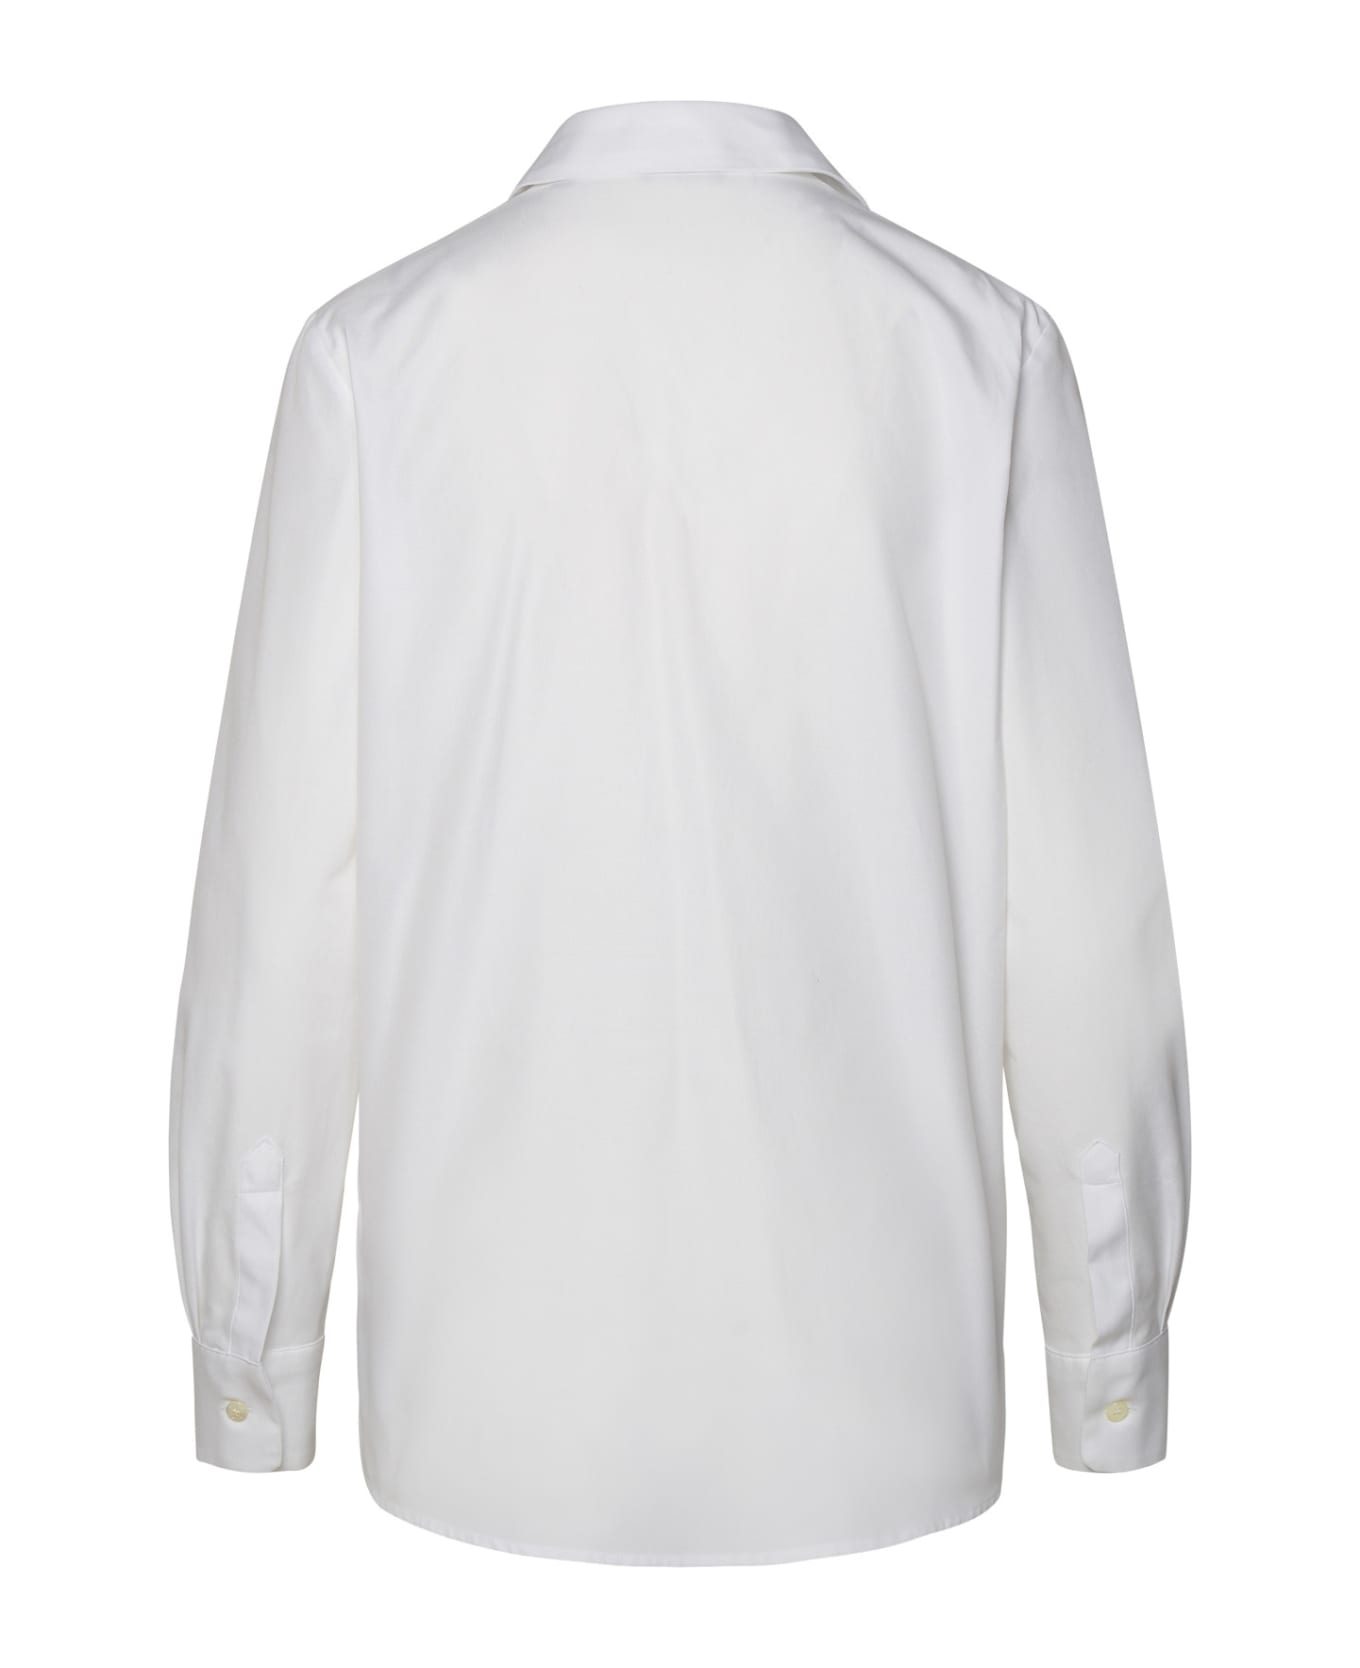 Etro White Cotton Shirt - OPTICAL WHITE シャツ